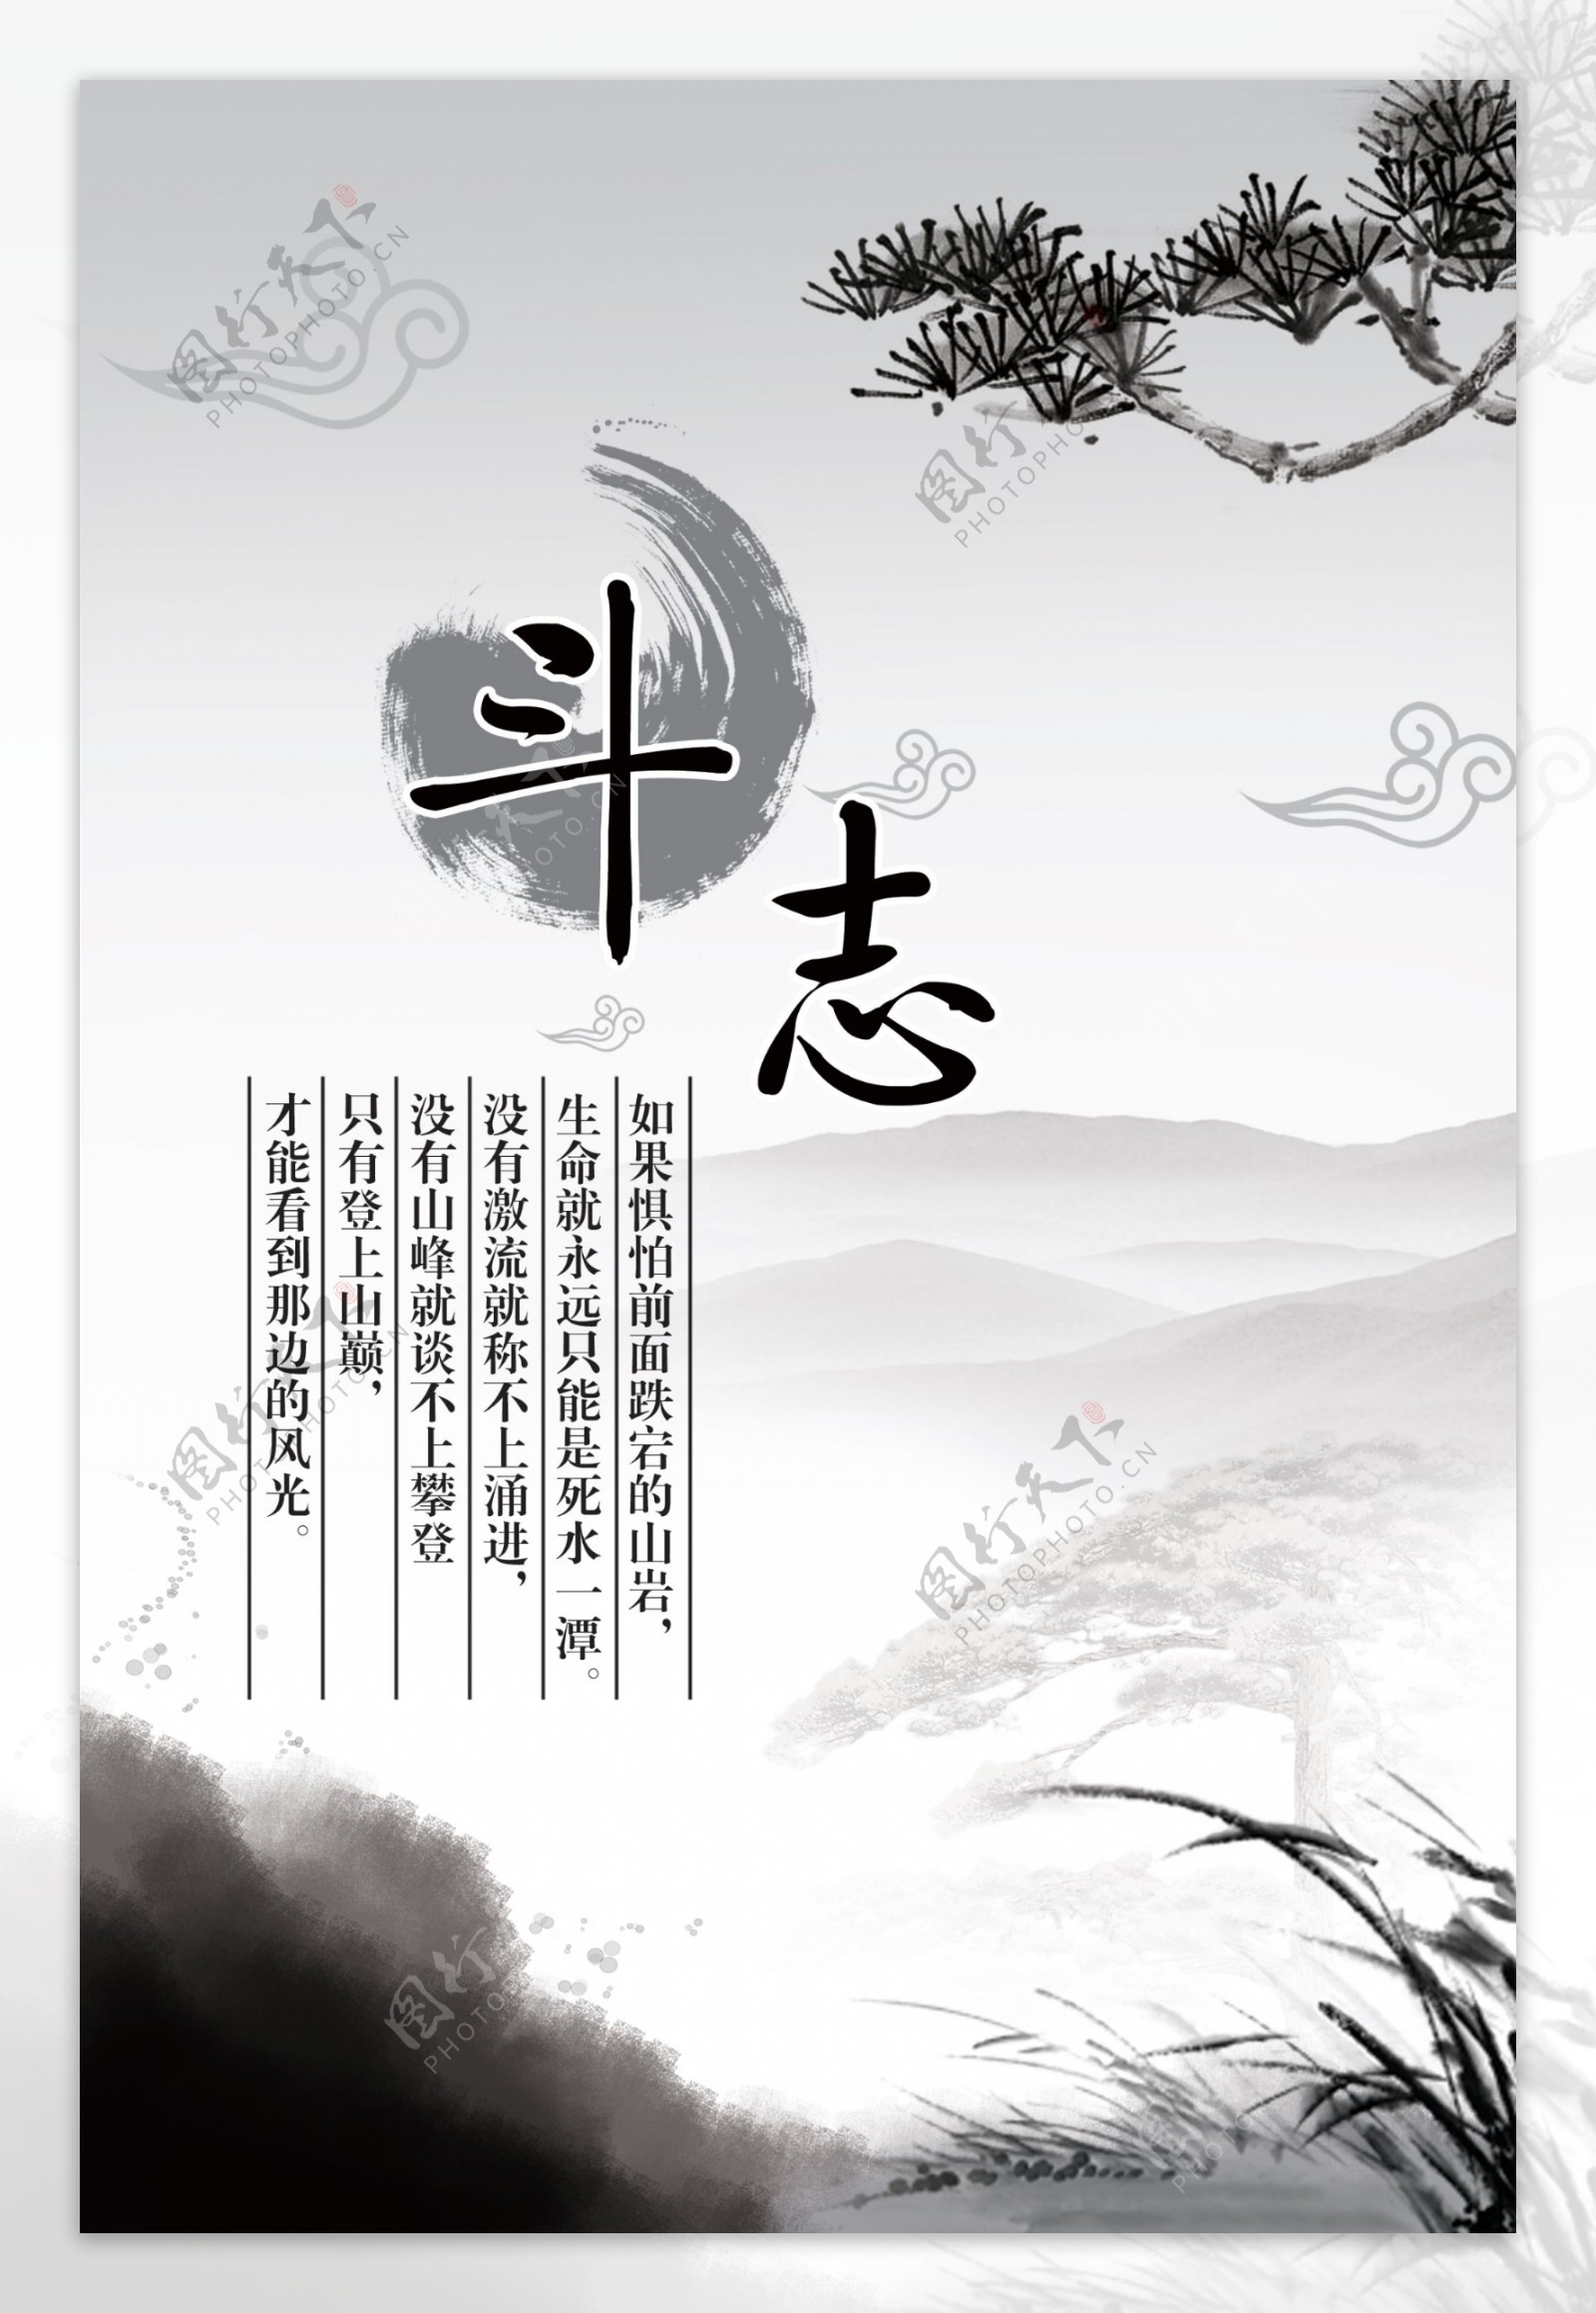 中国风水墨元素企业文化展板